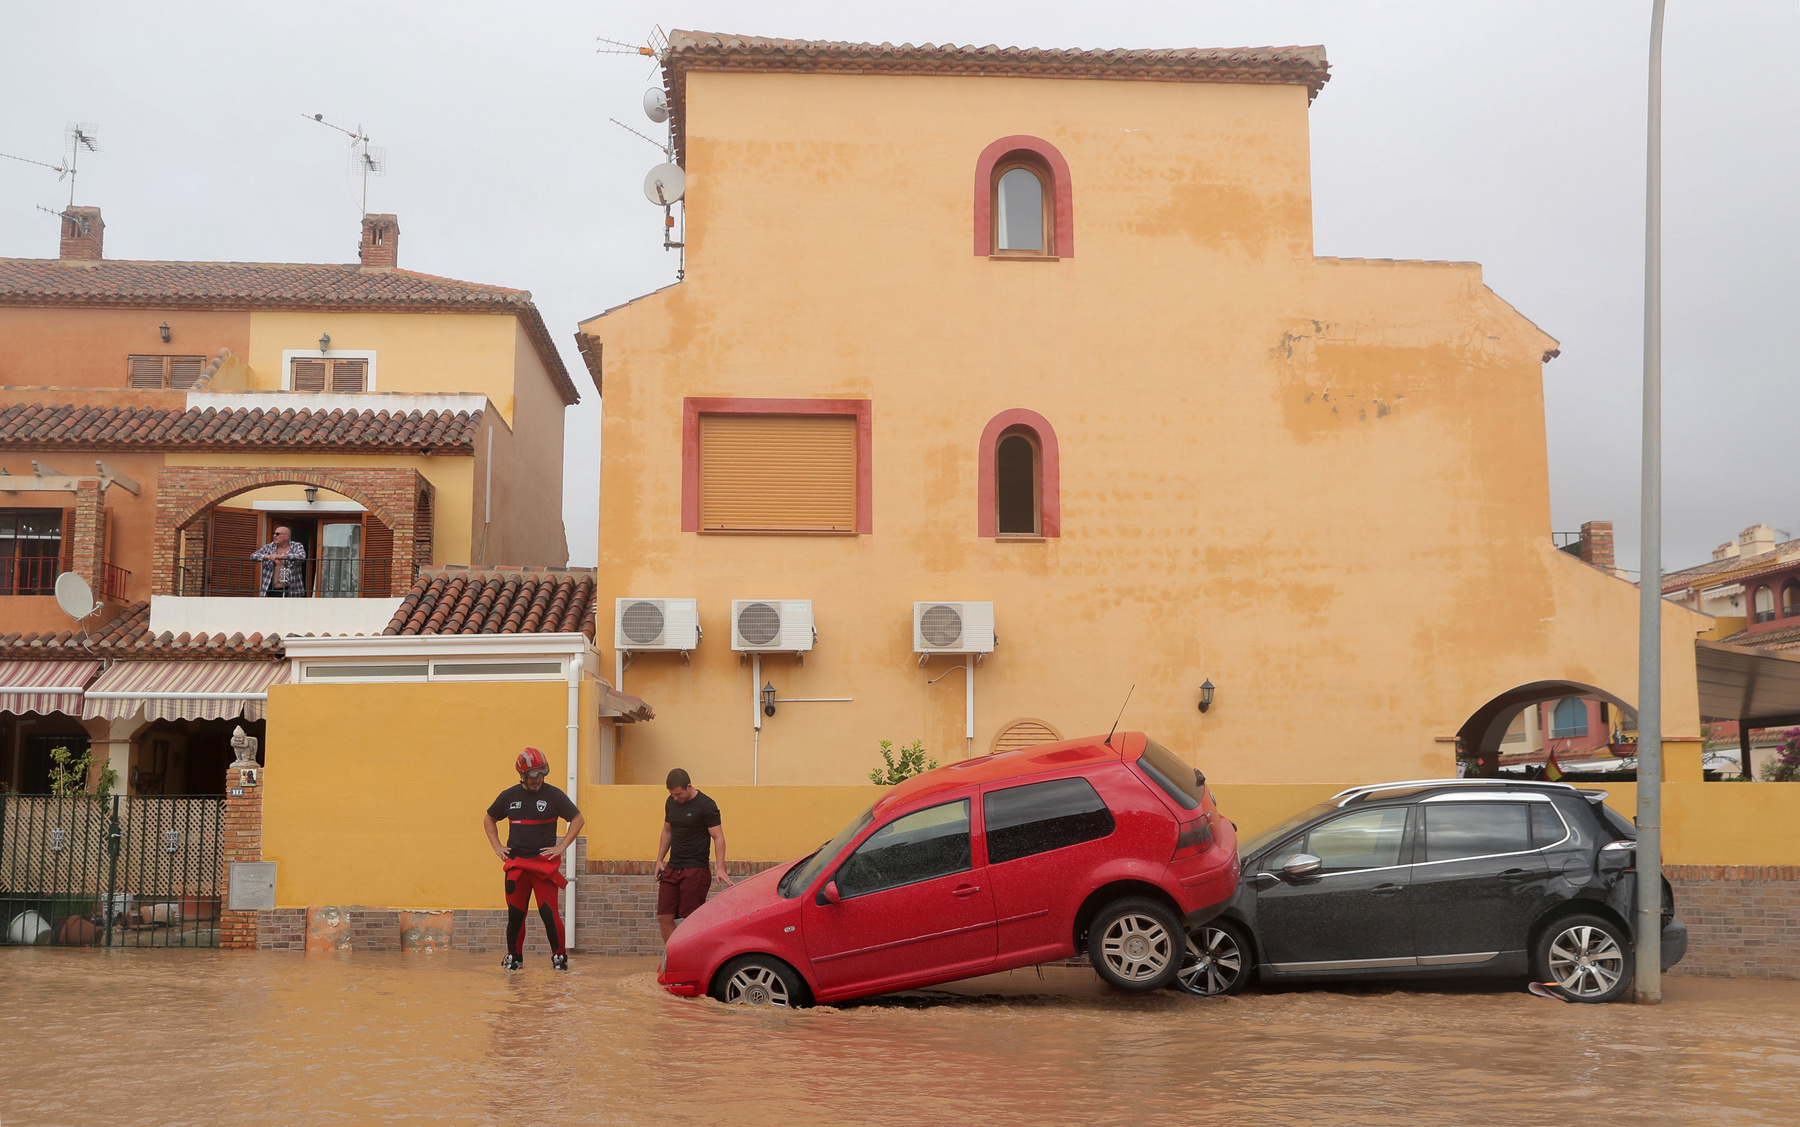 A spanyol meteorológiai szolgálat szerint a valenciai Oruhuela településen az elmúlt 48 órában négyzetméterenként 400 litert meghaladó csapadék esett. Ontinyentben hat óra alatt négyzetméterenként több mint 300 liter csapadék esett, akkora mennyiség, amennyi általában fél év alatt szokott.